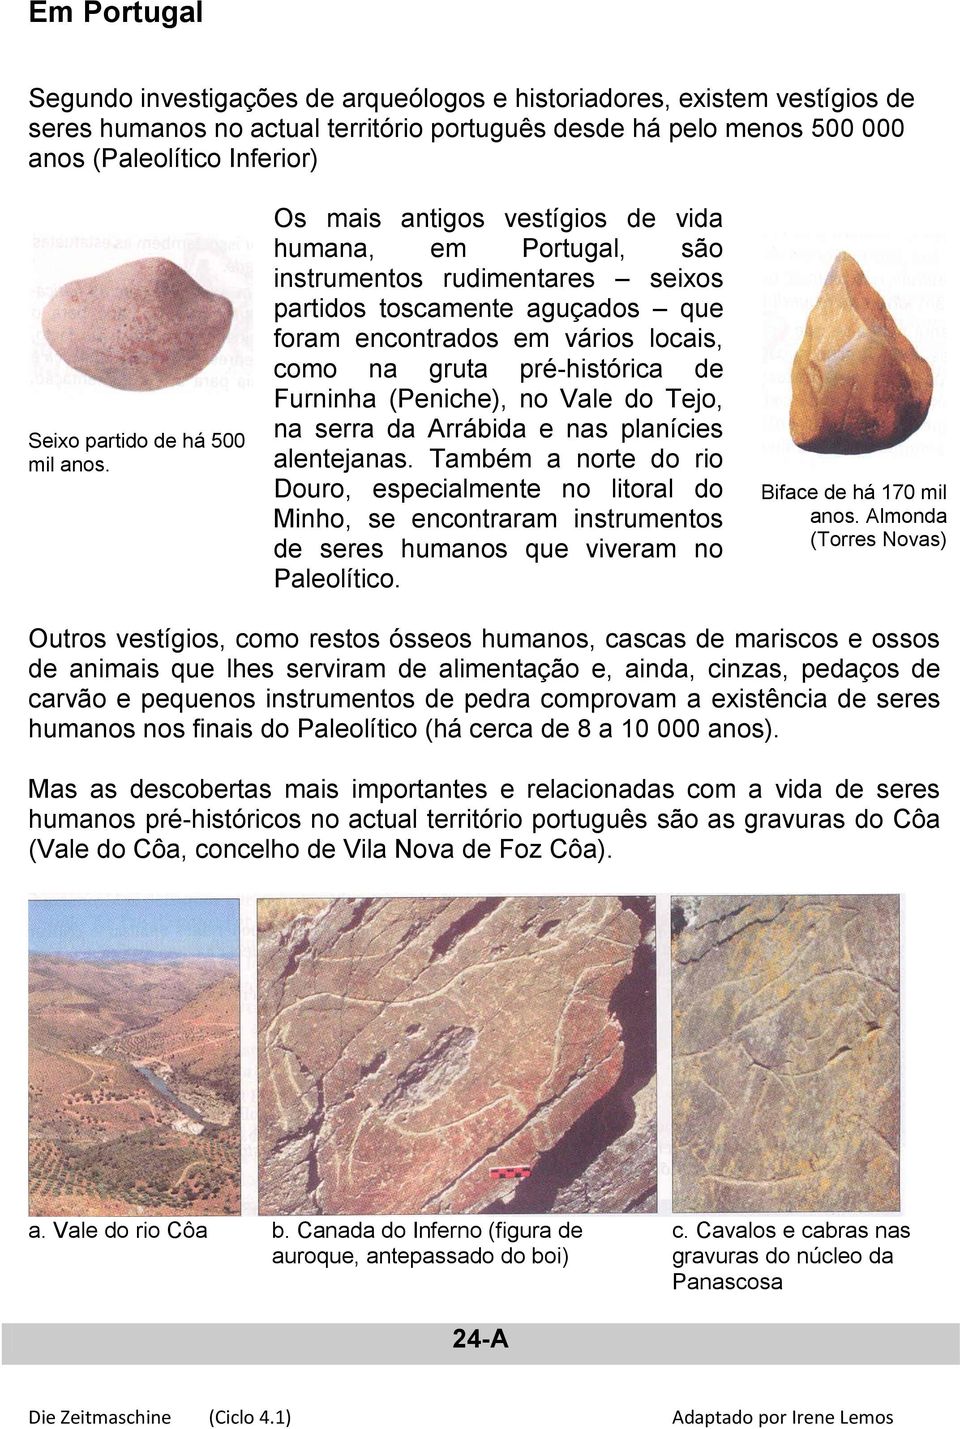 Os mais antigos vestígios de vida humana, em Portugal, são instrumentos rudimentares seixos partidos toscamente aguçados que foram encontrados em vários locais, como na gruta pré-histórica de